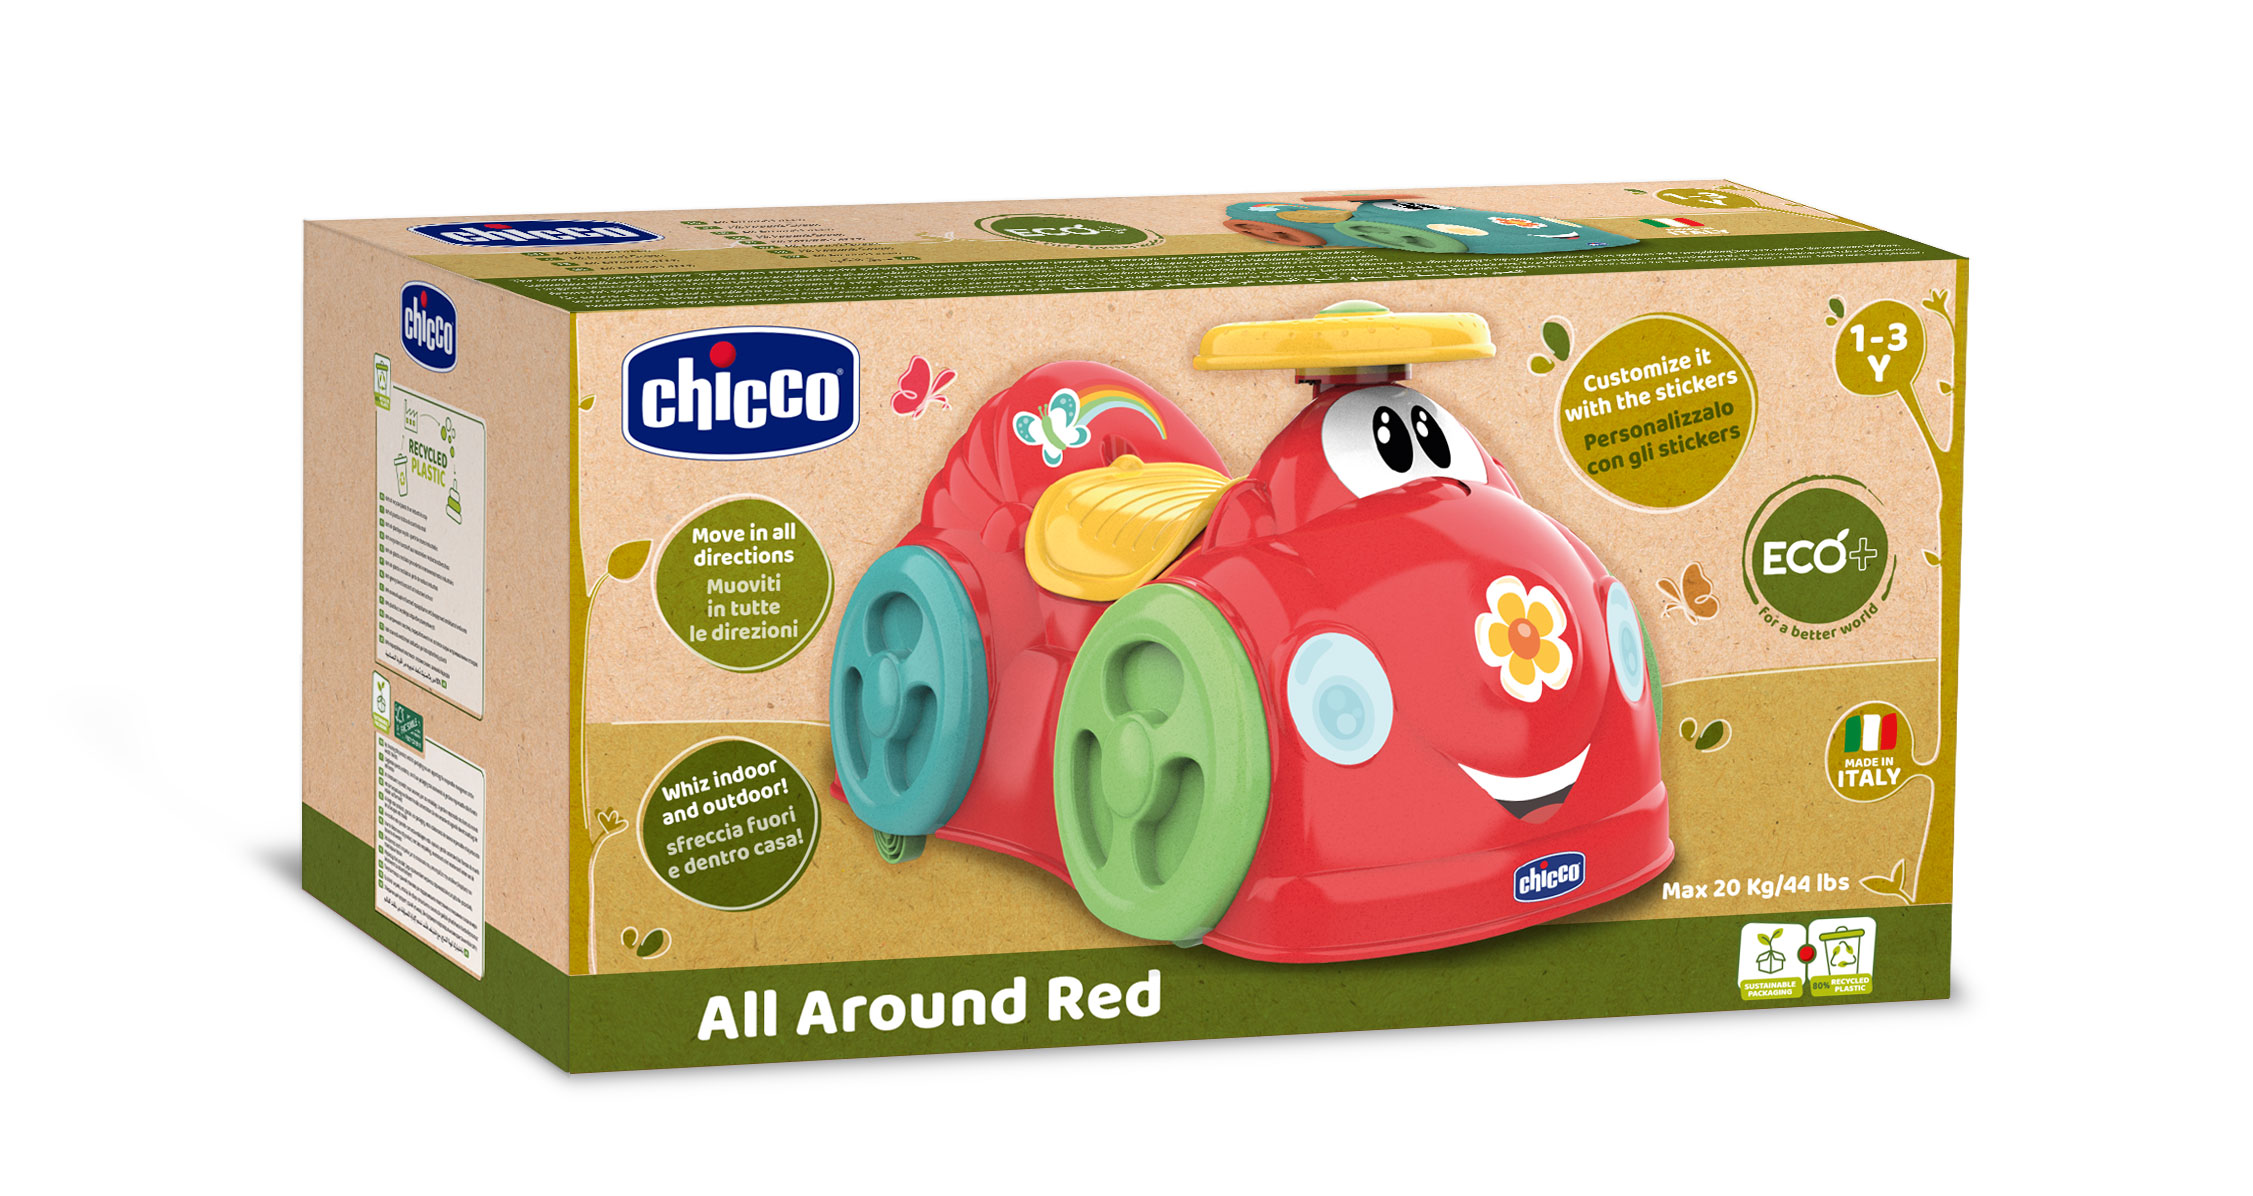 Caballable All Around Eco+ Color Rojo 00011113100000 Chicco Fabricado en Italia de plástico Reciclado ecológico 